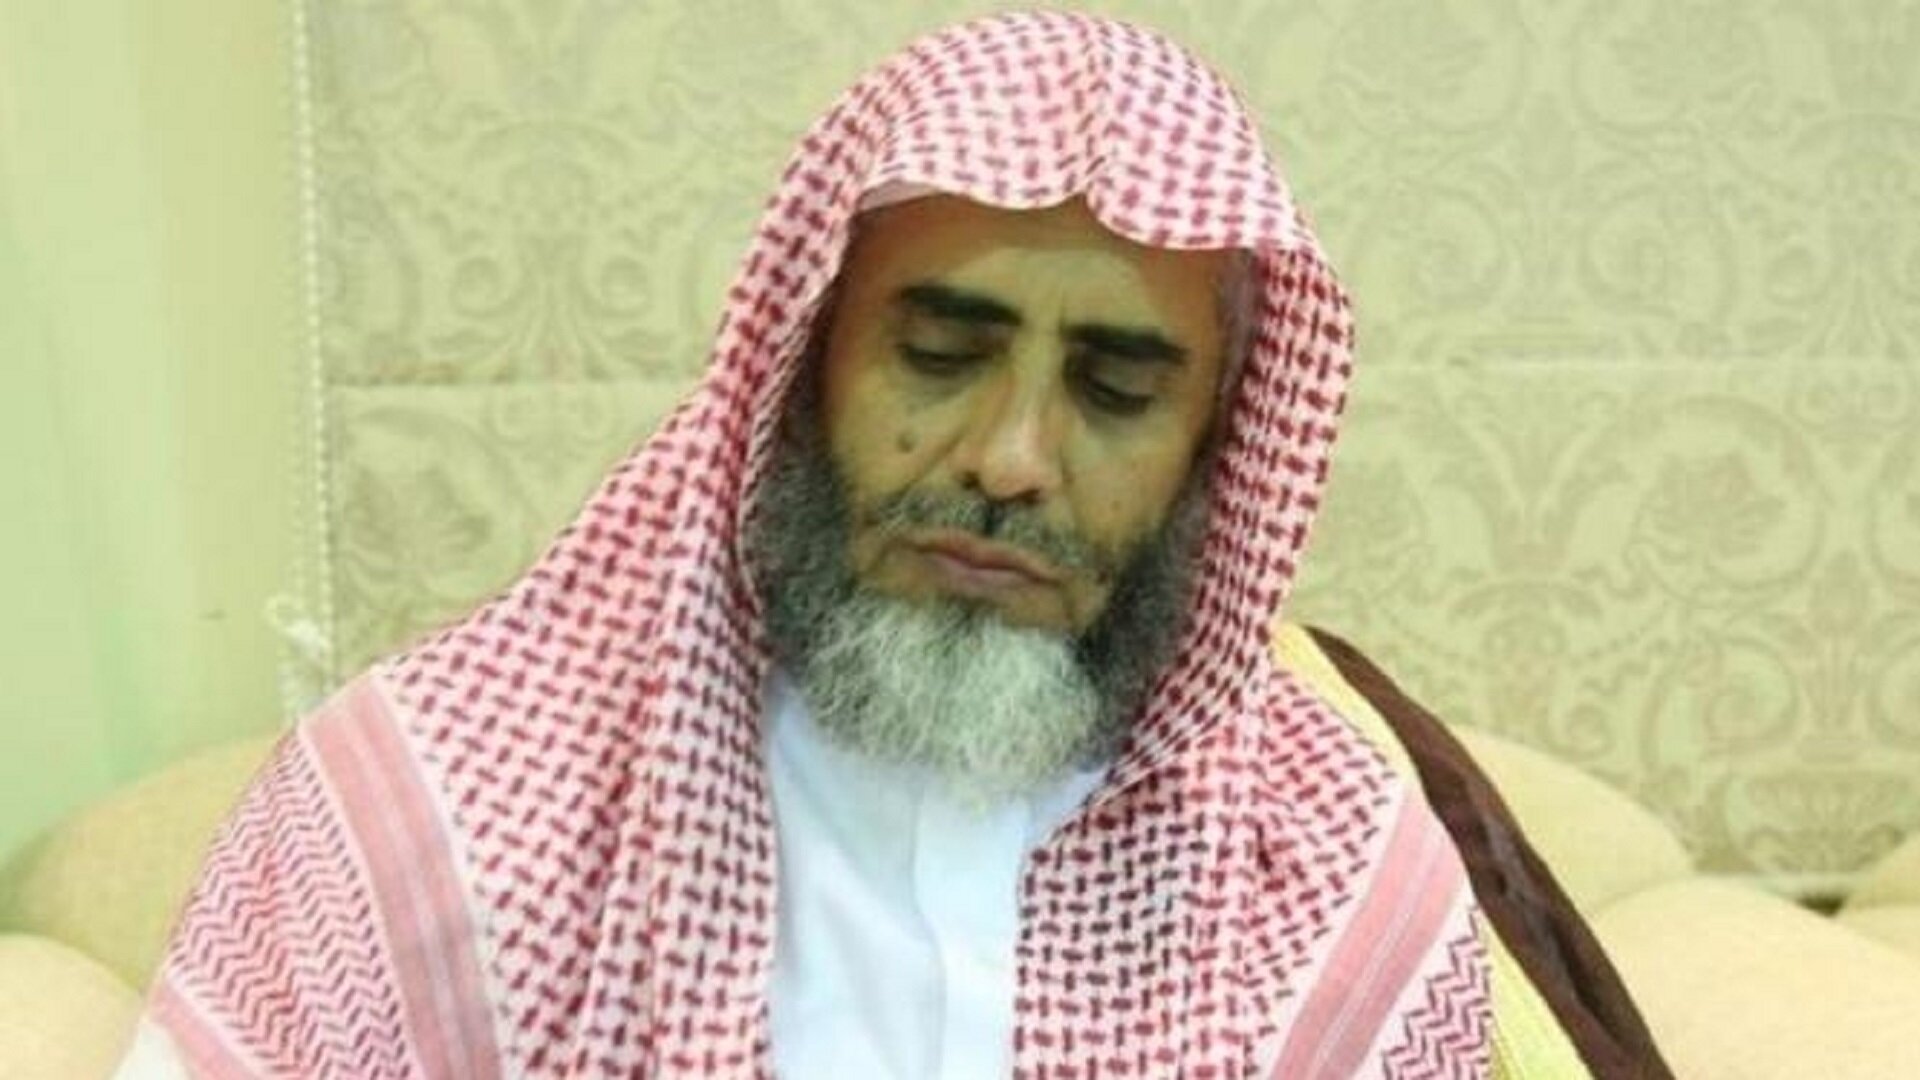 نجل الداعية السعودي عوض القرني المعتقل في سجون السعودية يغرد عن والده بعد 2000 يوم من اعتقاله